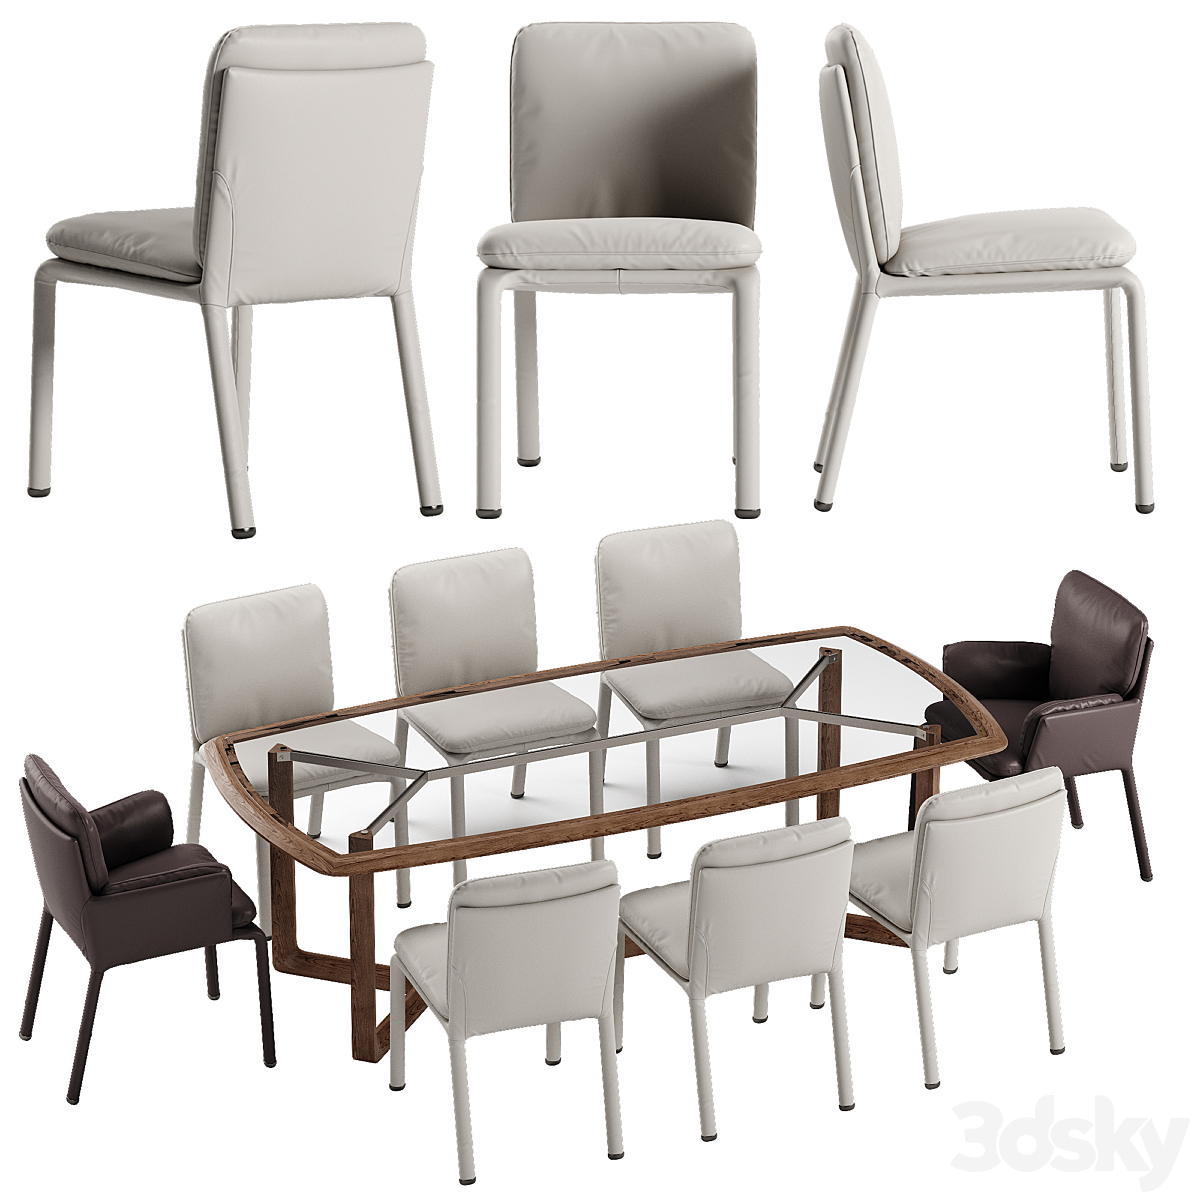 Natuzzi Ambra chair Amber table set